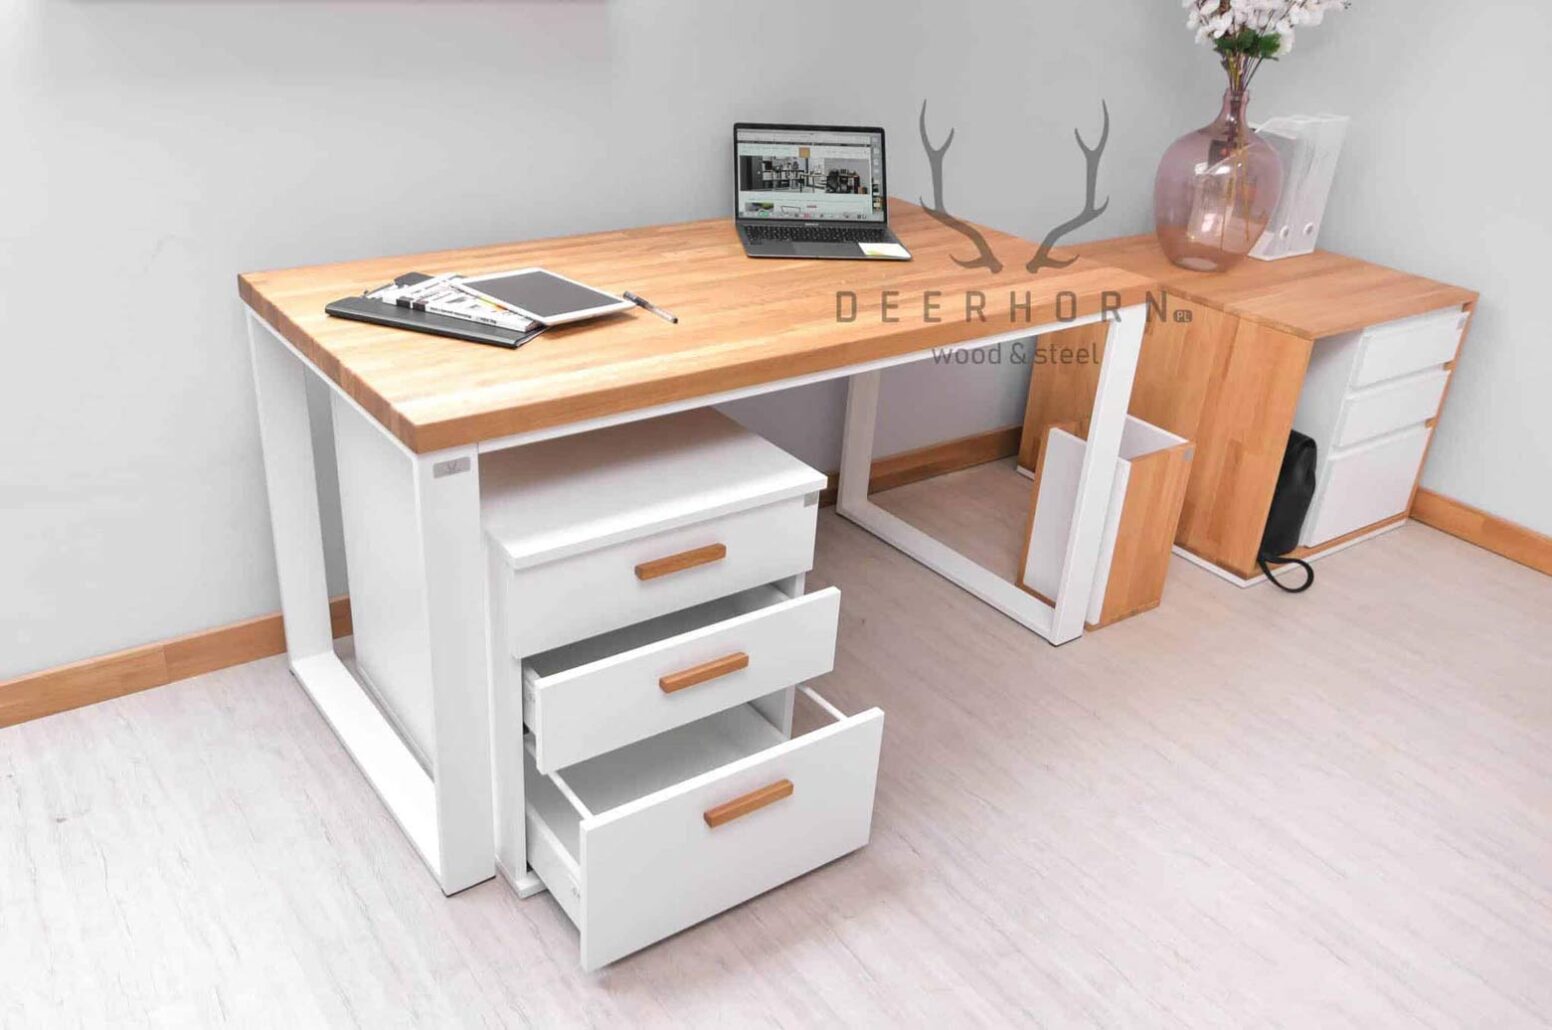 weißer Schreibtisch mit Schubladen